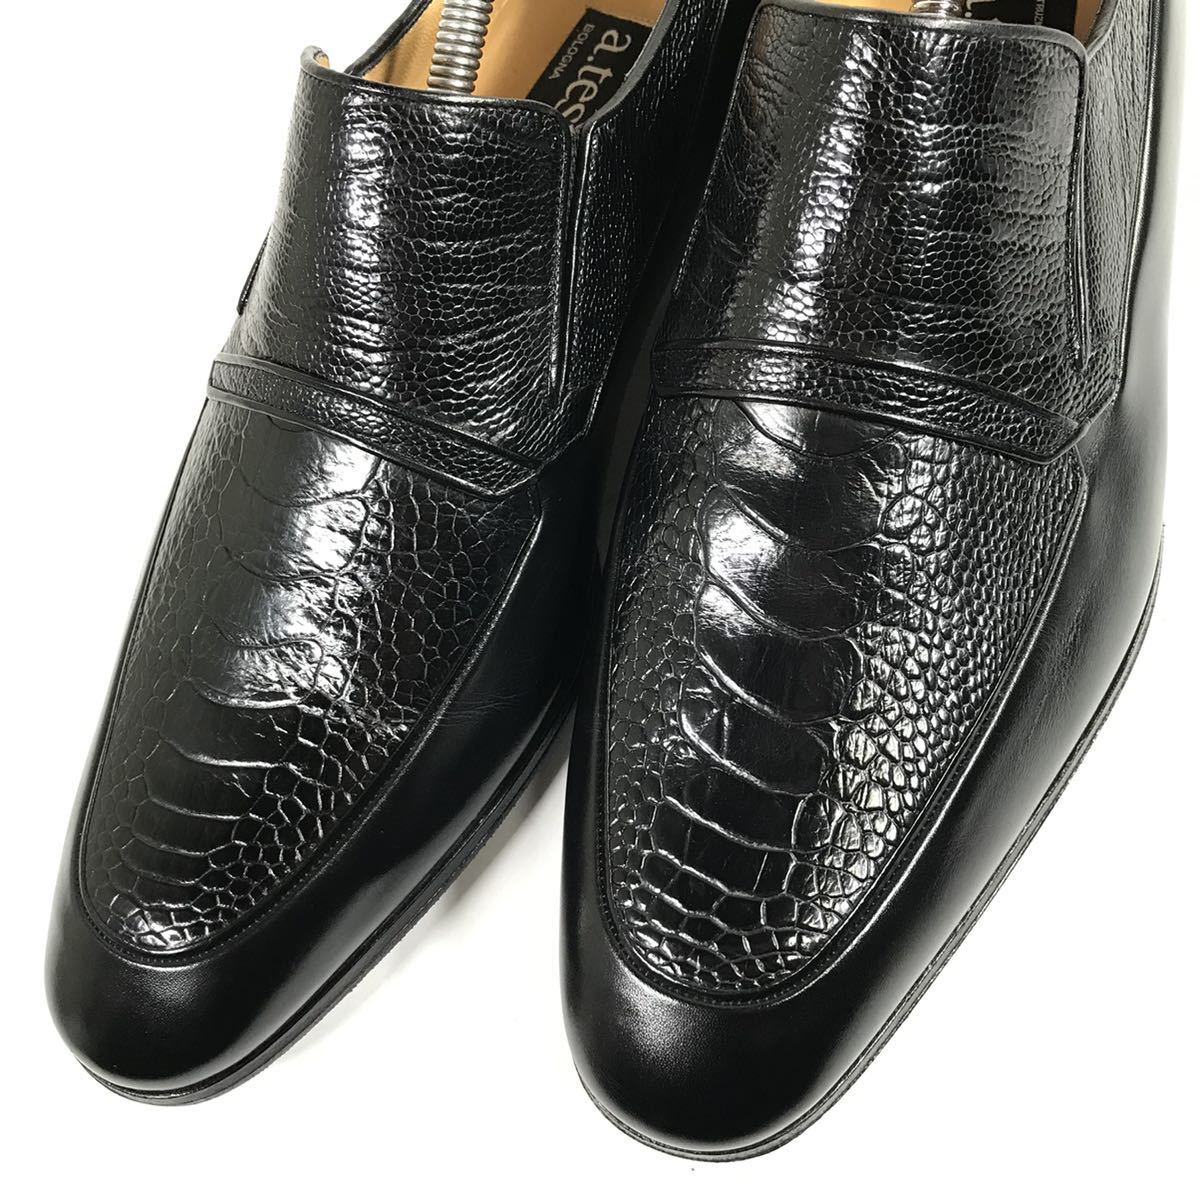  прекрасный товар [a* тест -ni] подлинный товар a.testoni обувь 27.5cm чёрный o- -тактный нога туфли без застежки бизнес обувь Ostrich . птица мужской сделано в Италии 8 H